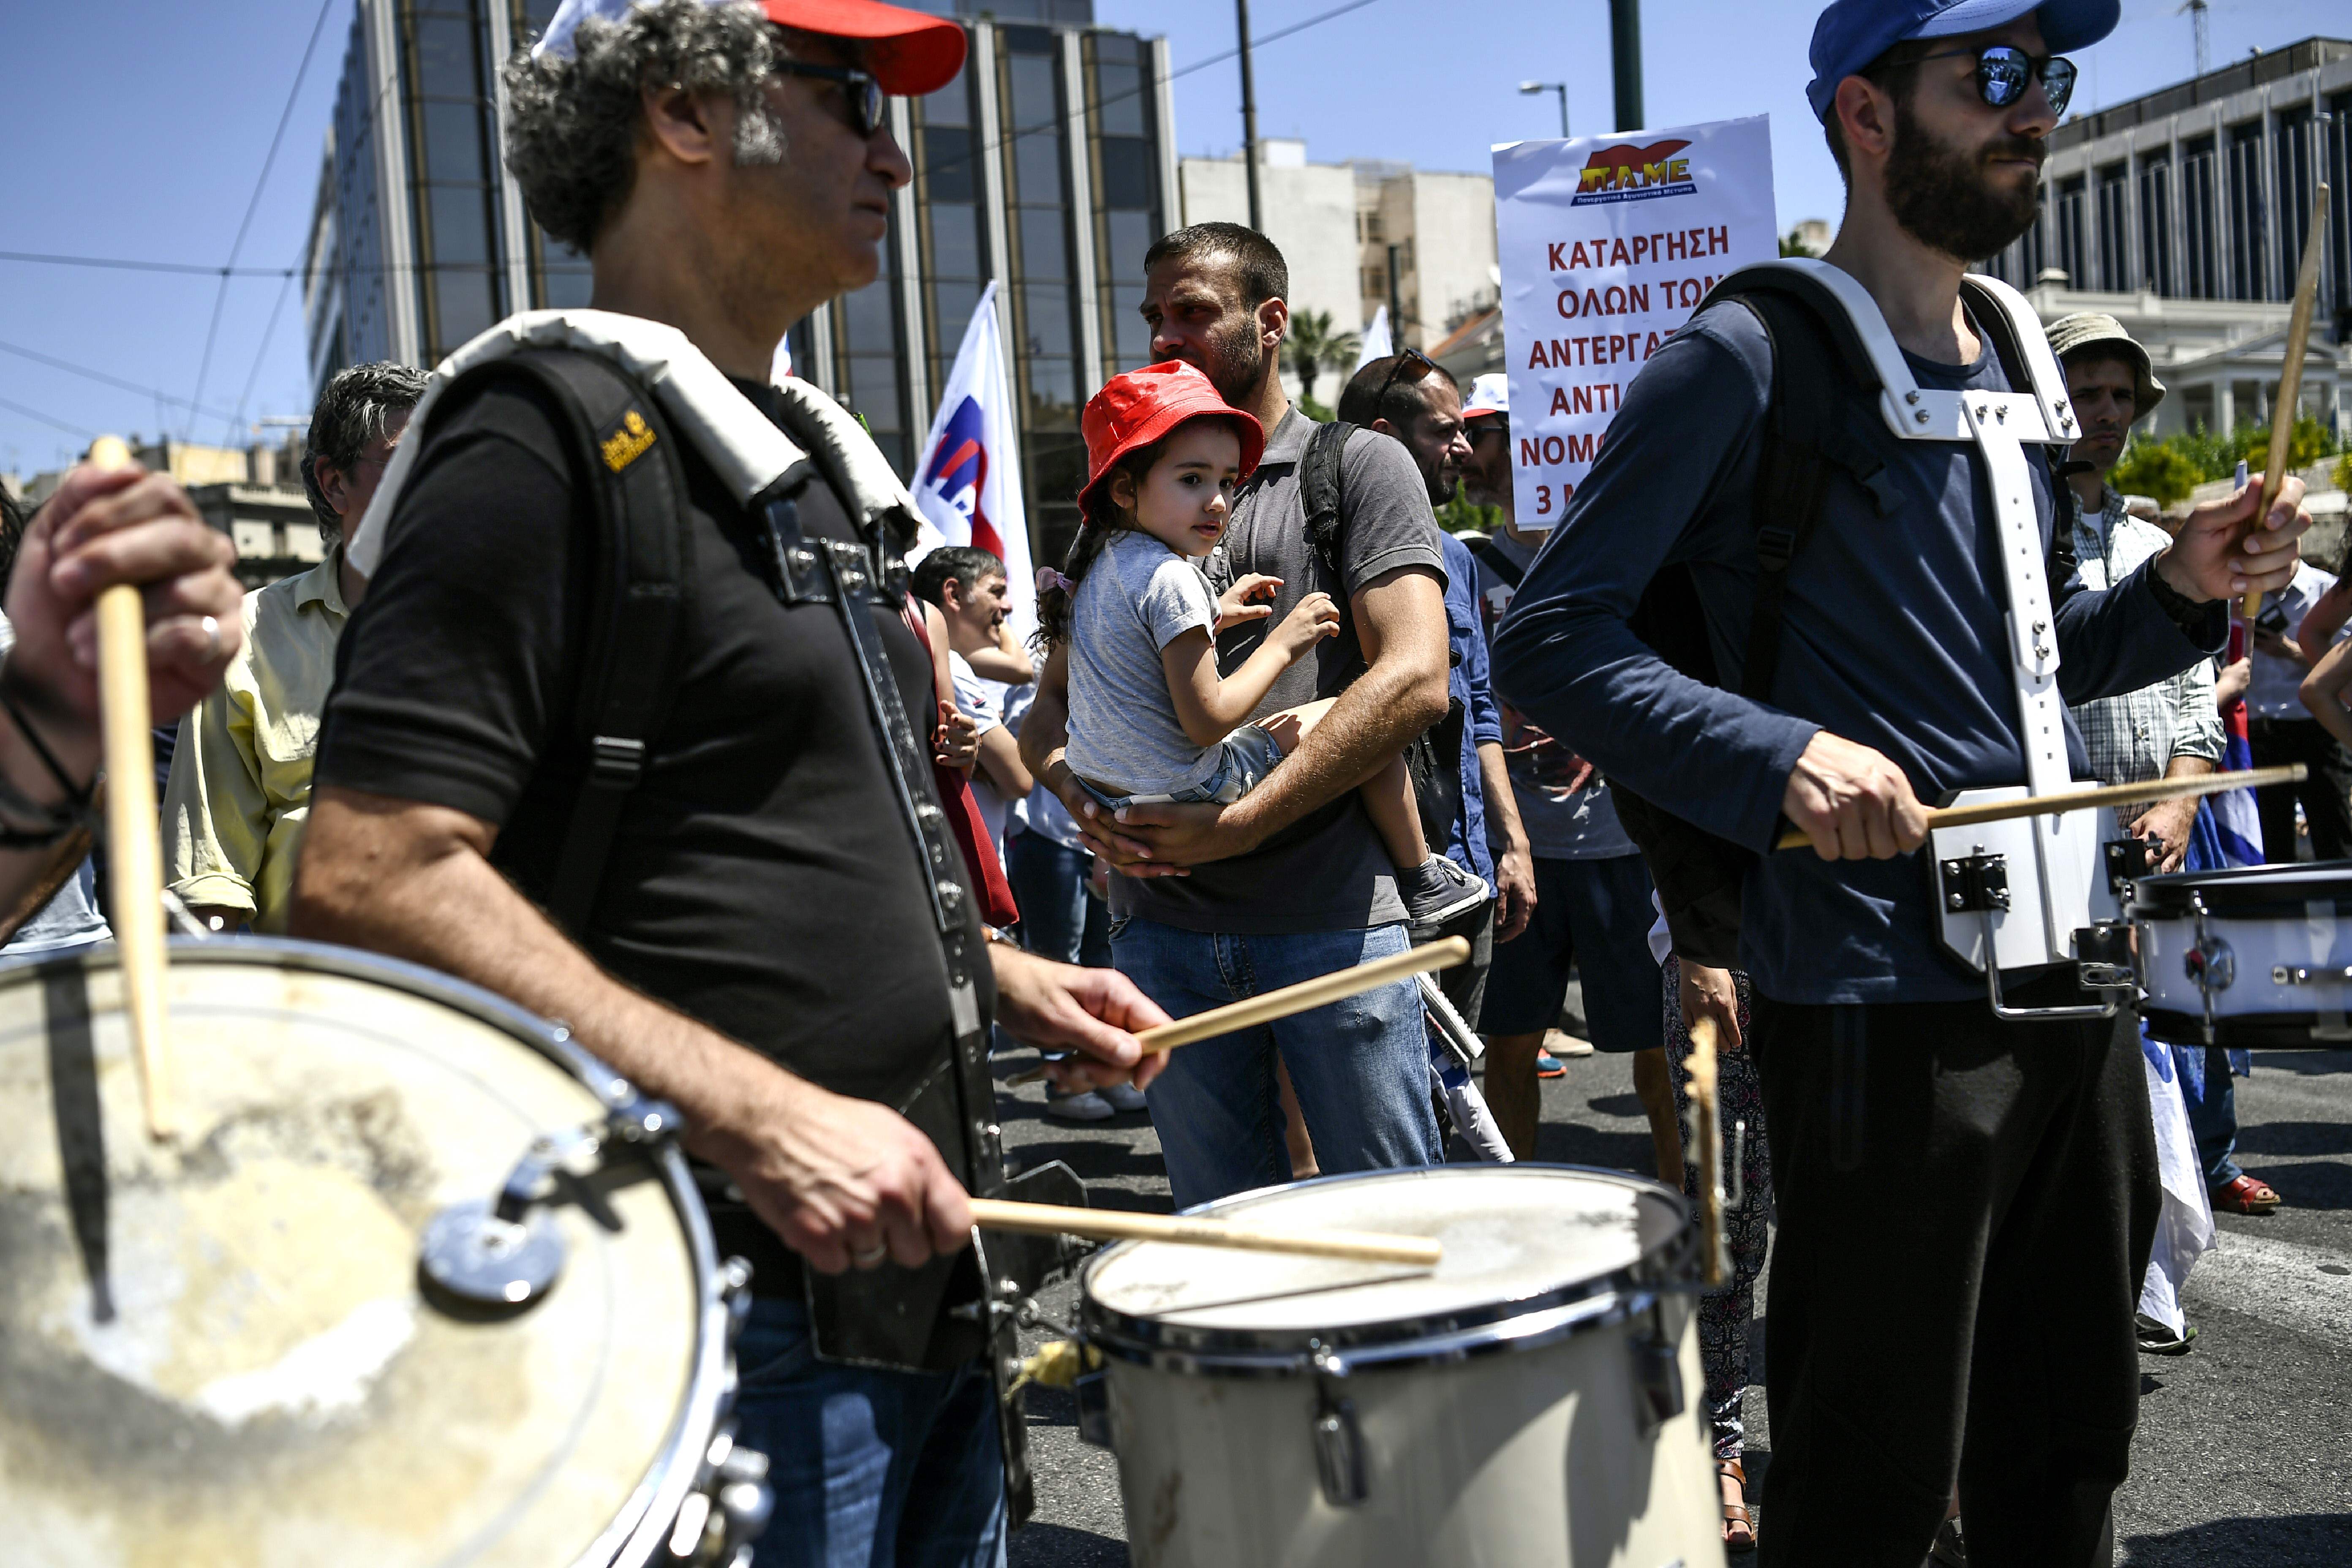 عزف على آلات موسيقية خلال إضراب عام فى اليونان